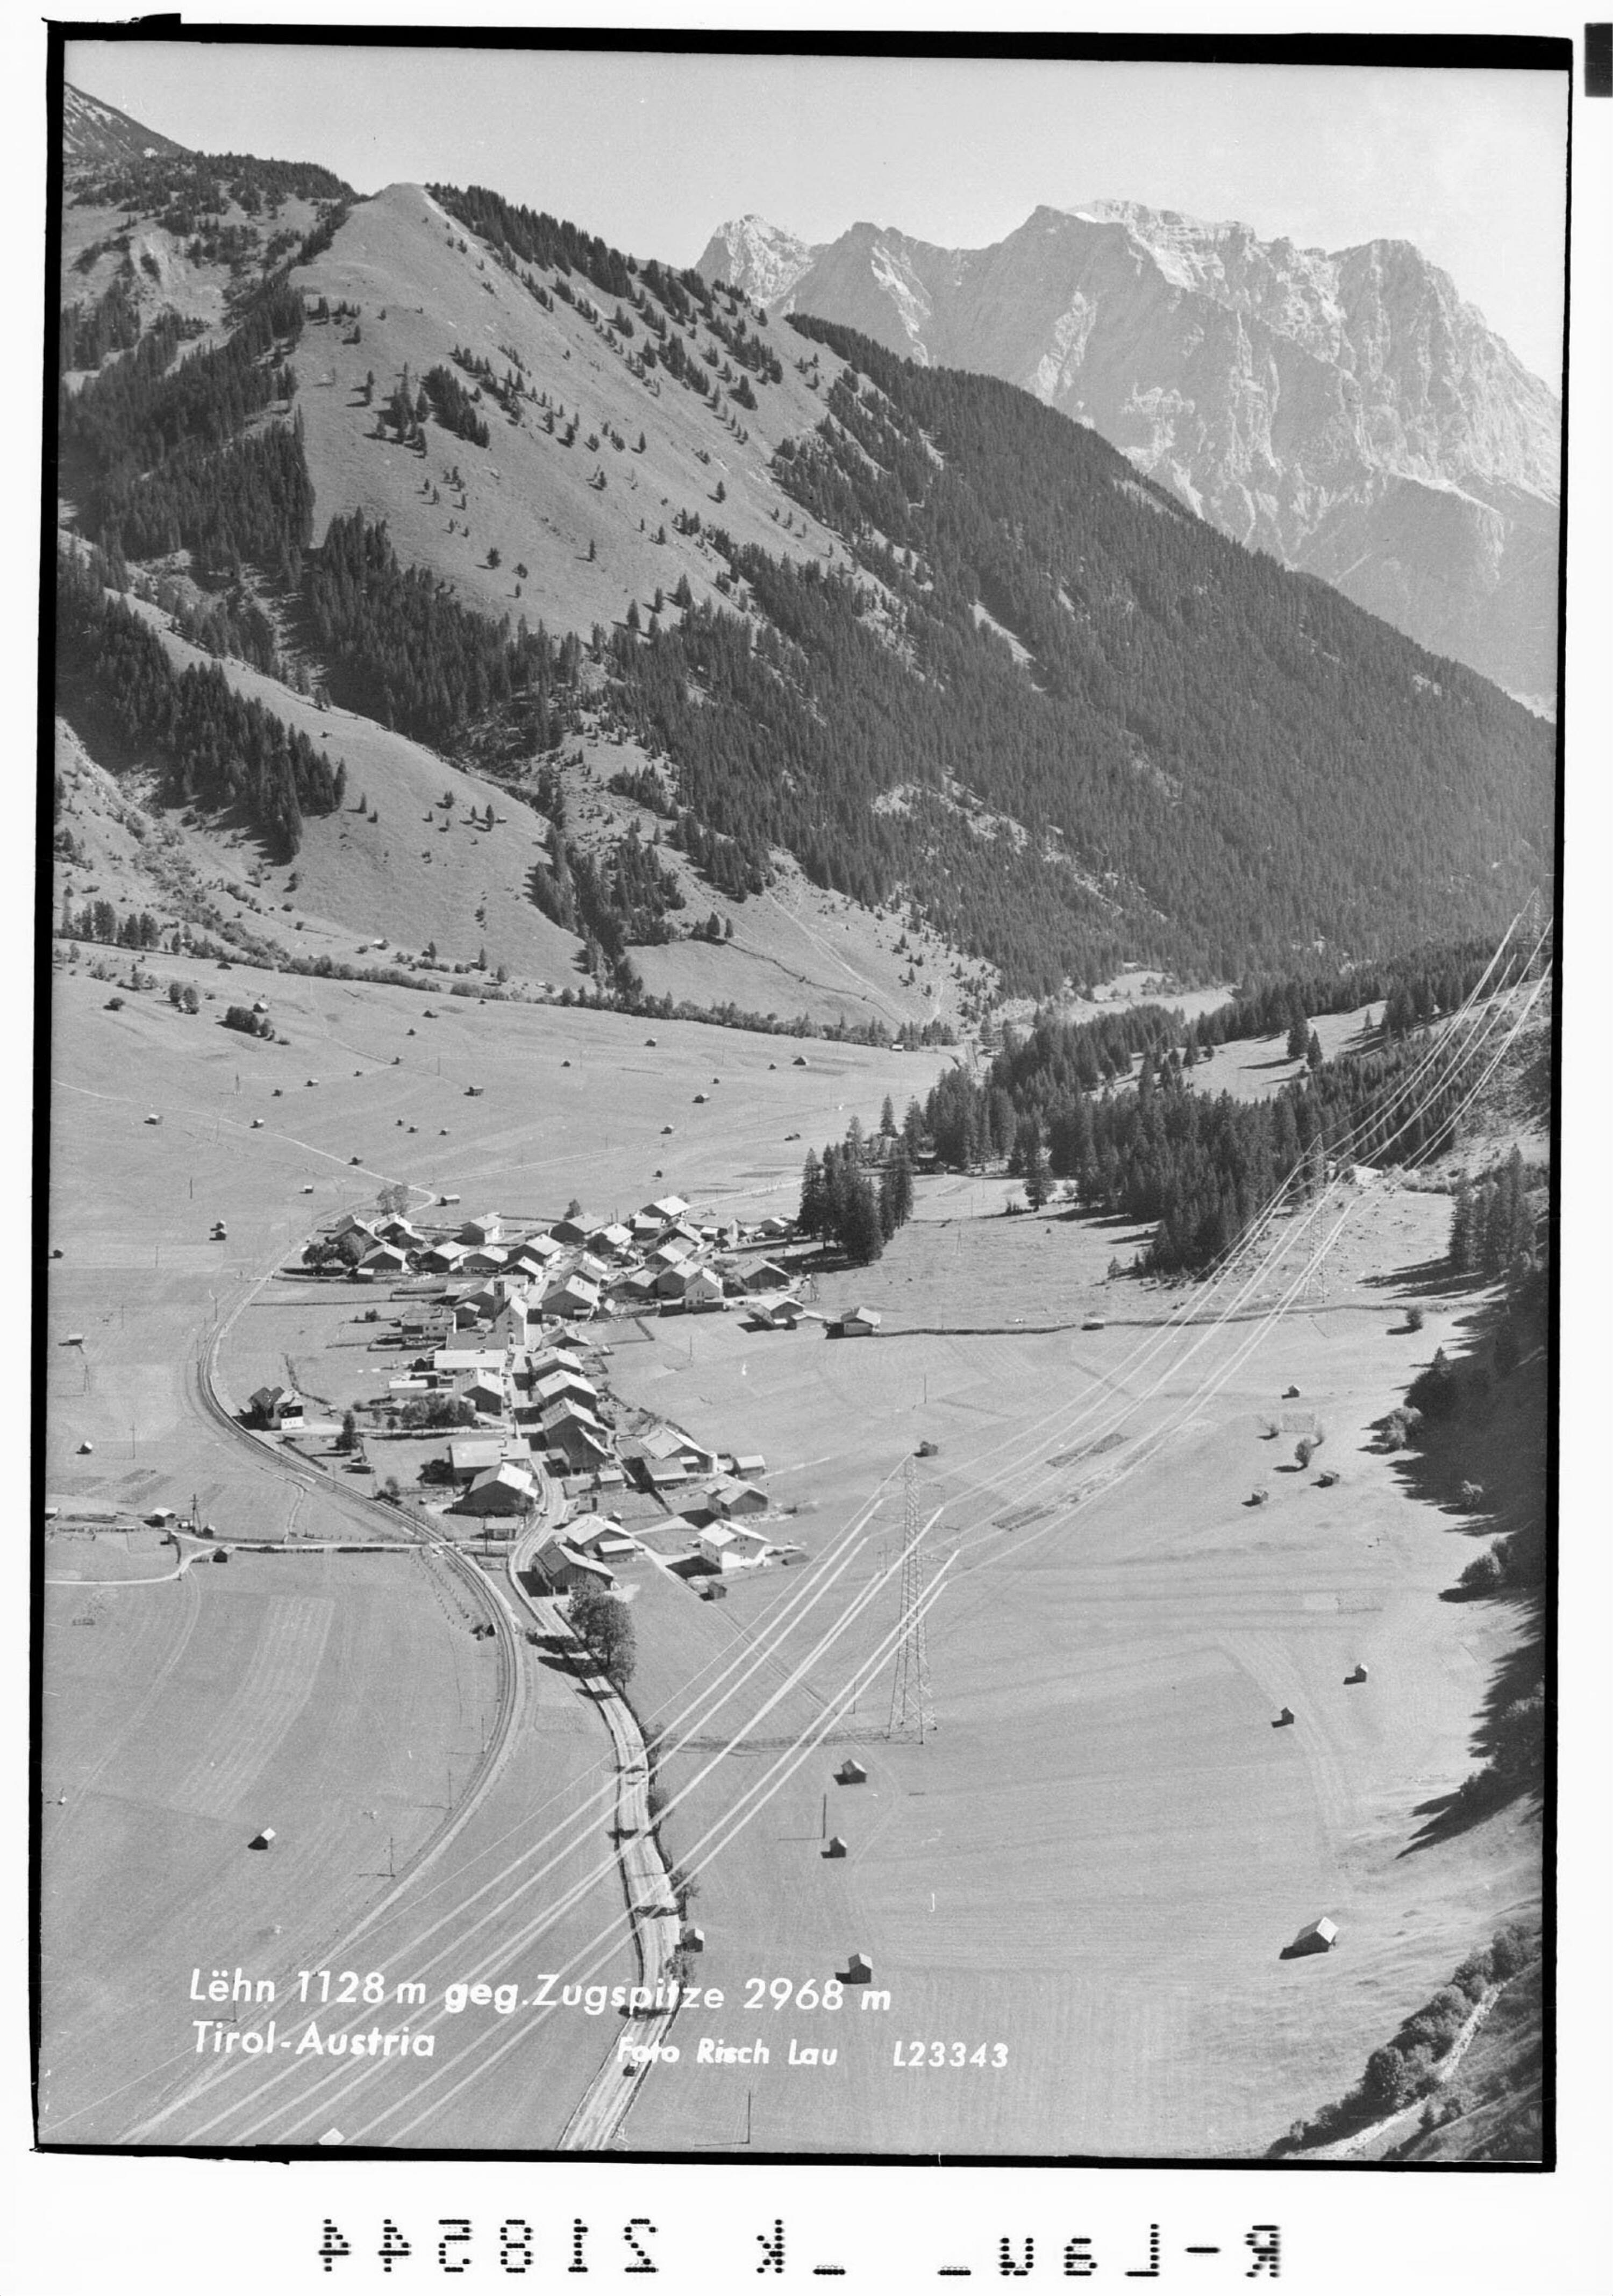 Lähn 1128 m gegen Zugspitze 2968 m Tirol - Austria></div>


    <hr>
    <div class=